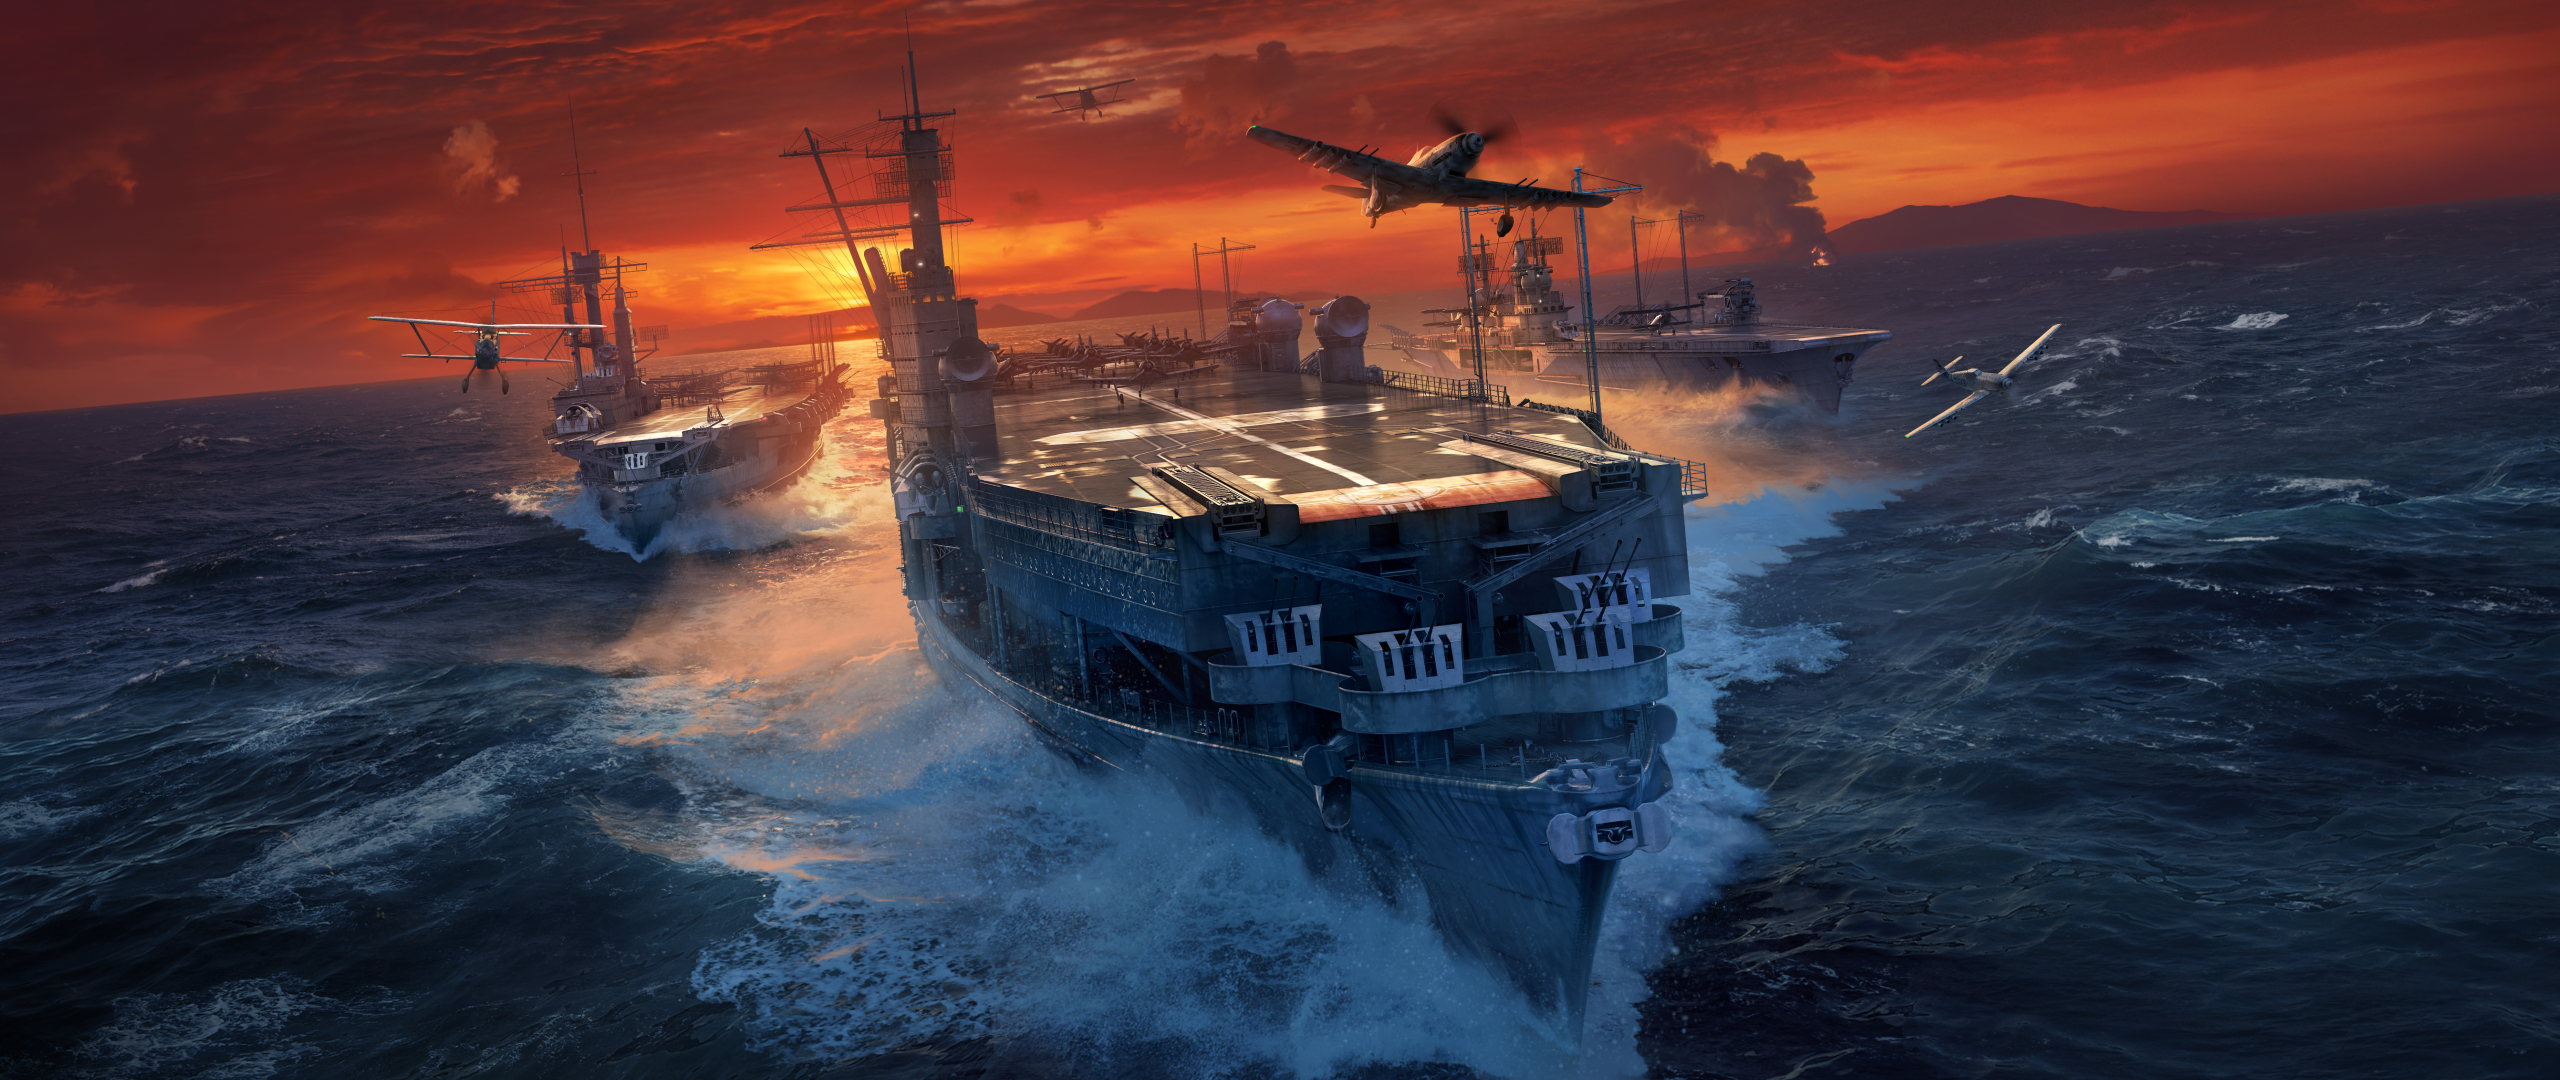 Manfred Von Richthofen Ship World Of Warships Ship Aircraft Carrier Messerschmitt Sea Sunset Artwork 2560x1080